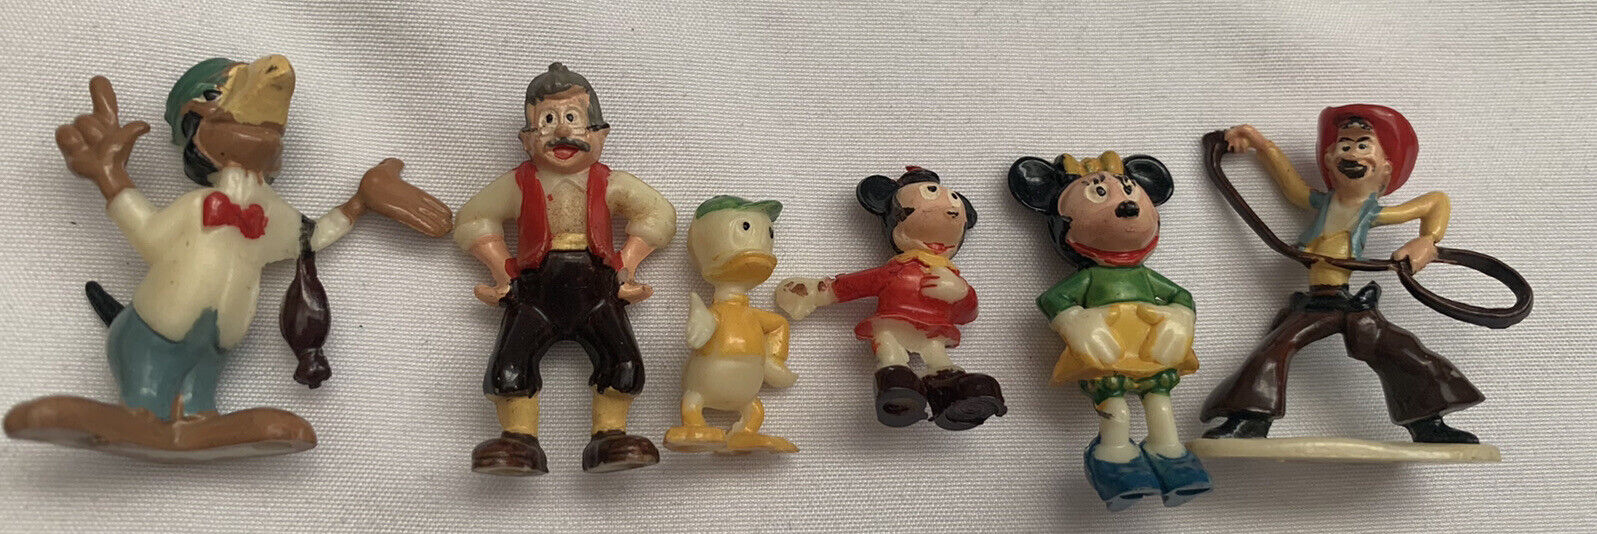 Vintage Marx DISNEYKINS Miniature Plastic Walt Disney Character Figures